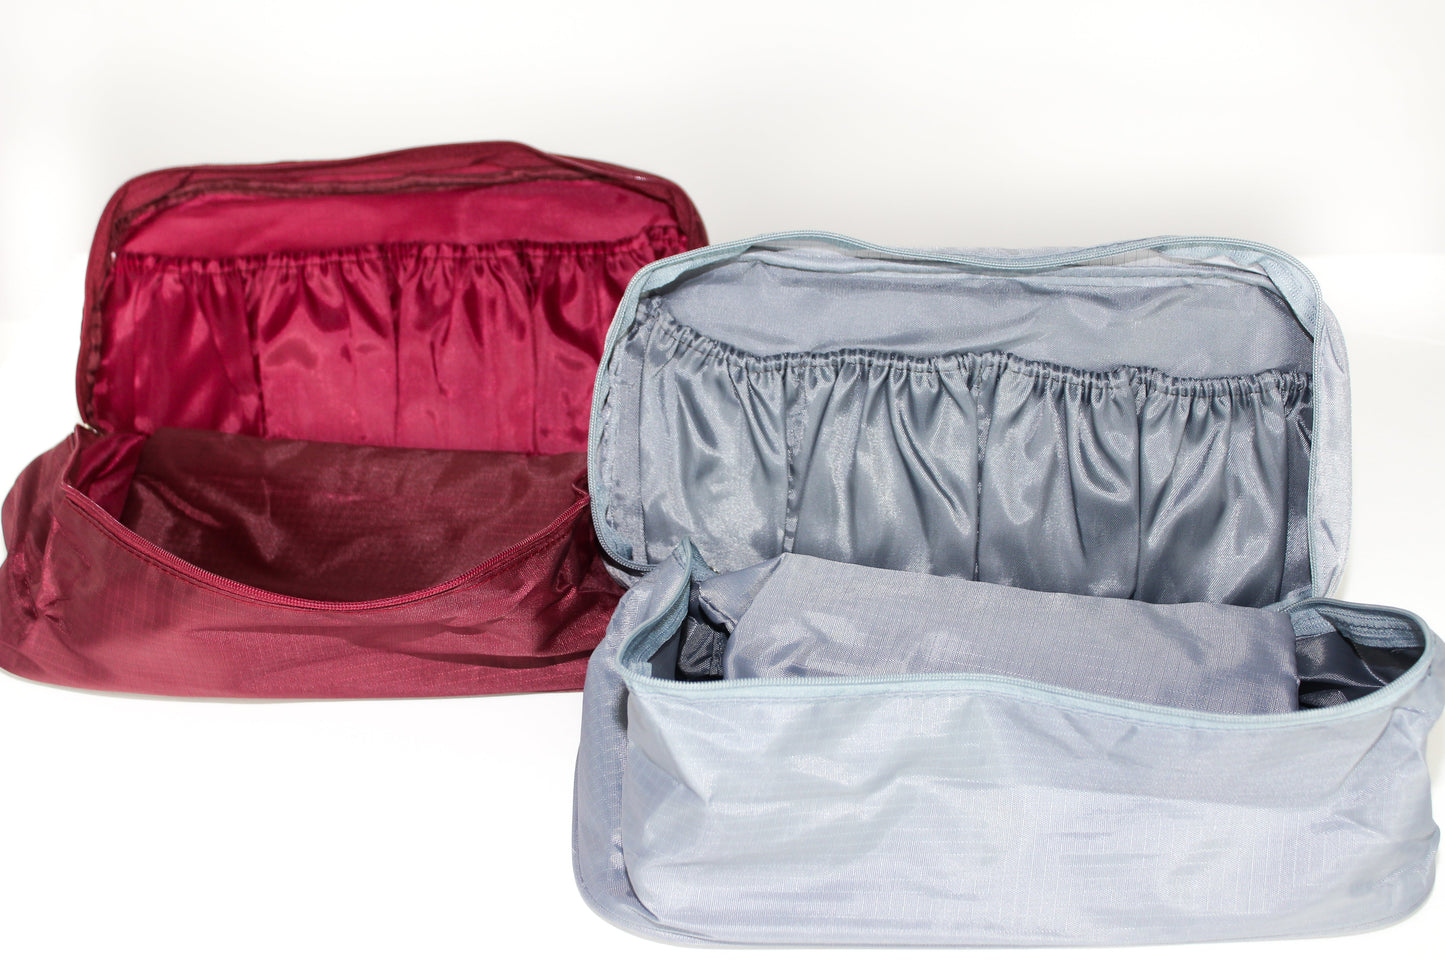 Travel organizer underwear set